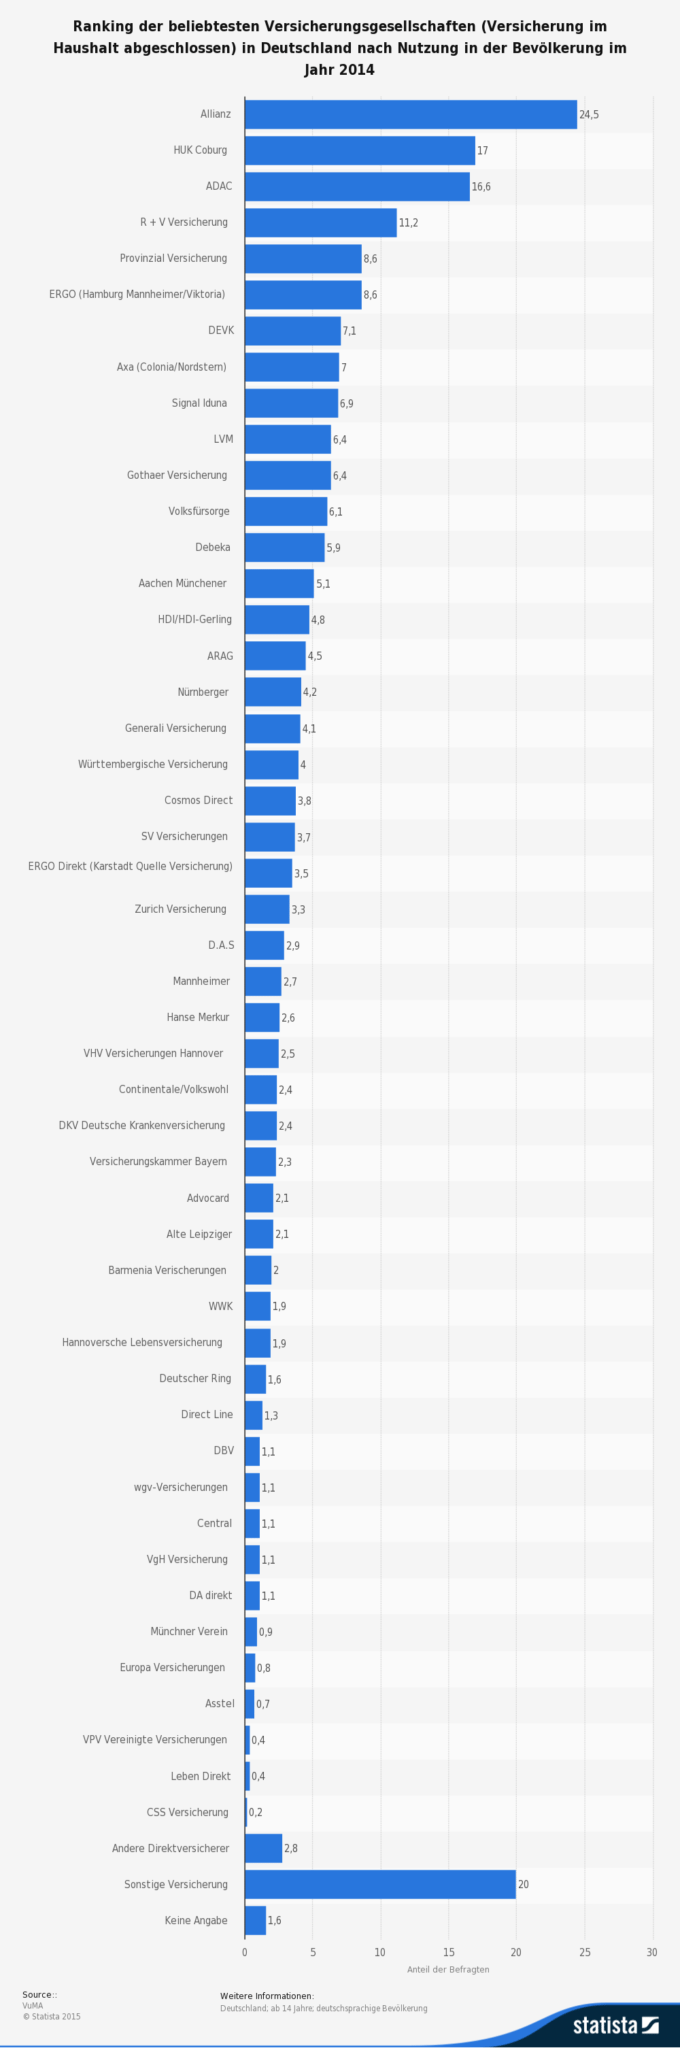 Ranking der beliebtesten Versicherungsgesellschaften (Versicherung im Haushalt abgeschlossen) in Deutschland nach Nutzung in der Bevölkerung im Jahr 2014 (Quelle: STATISTA / VuMa)